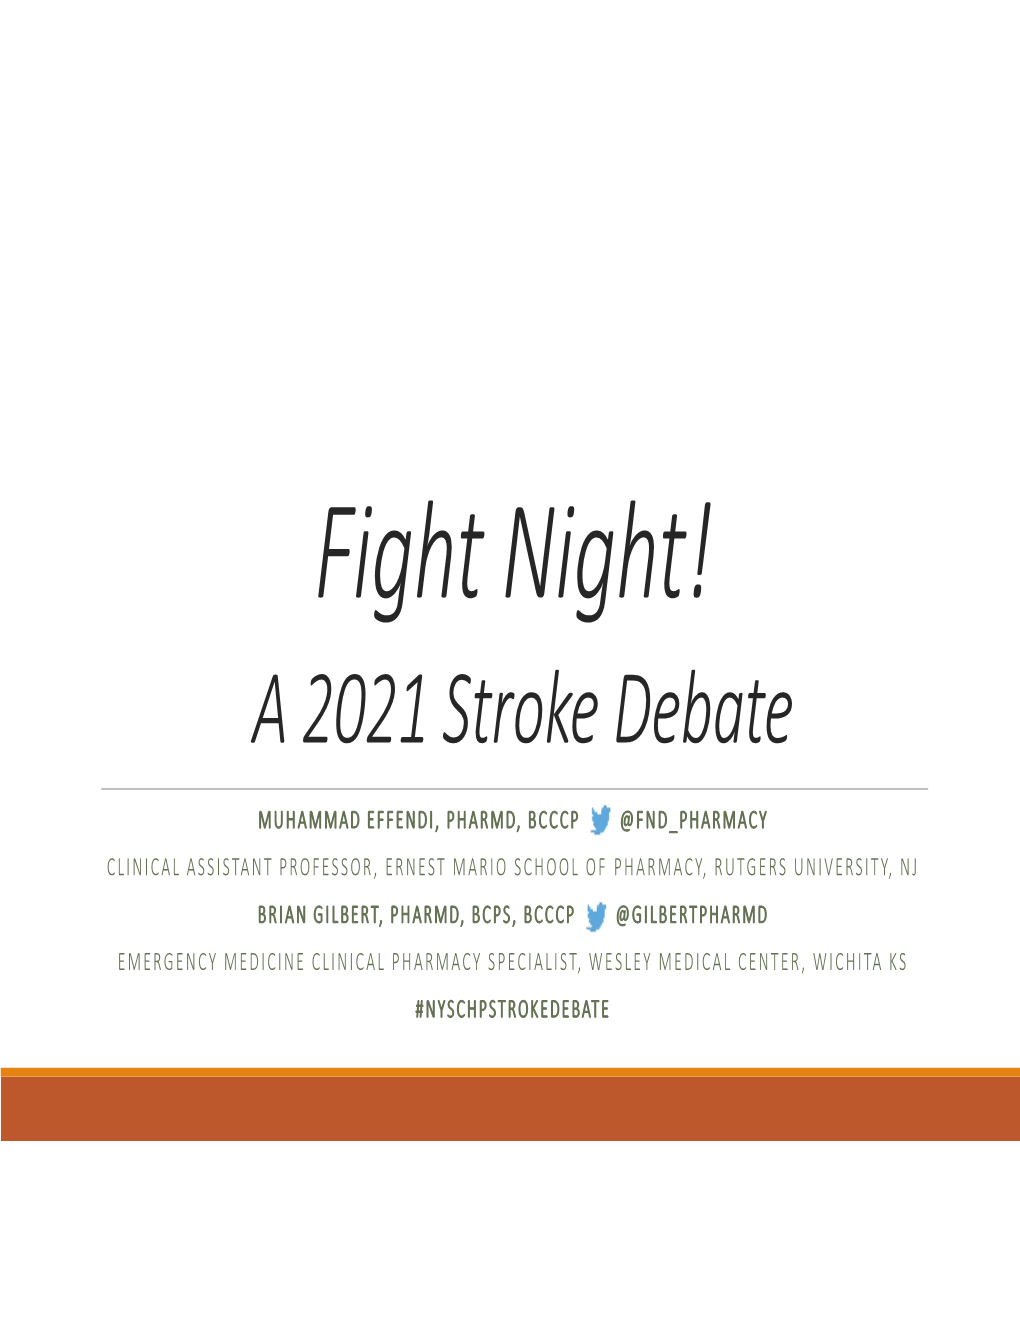 Fight Night! a 2021 Stroke Debate